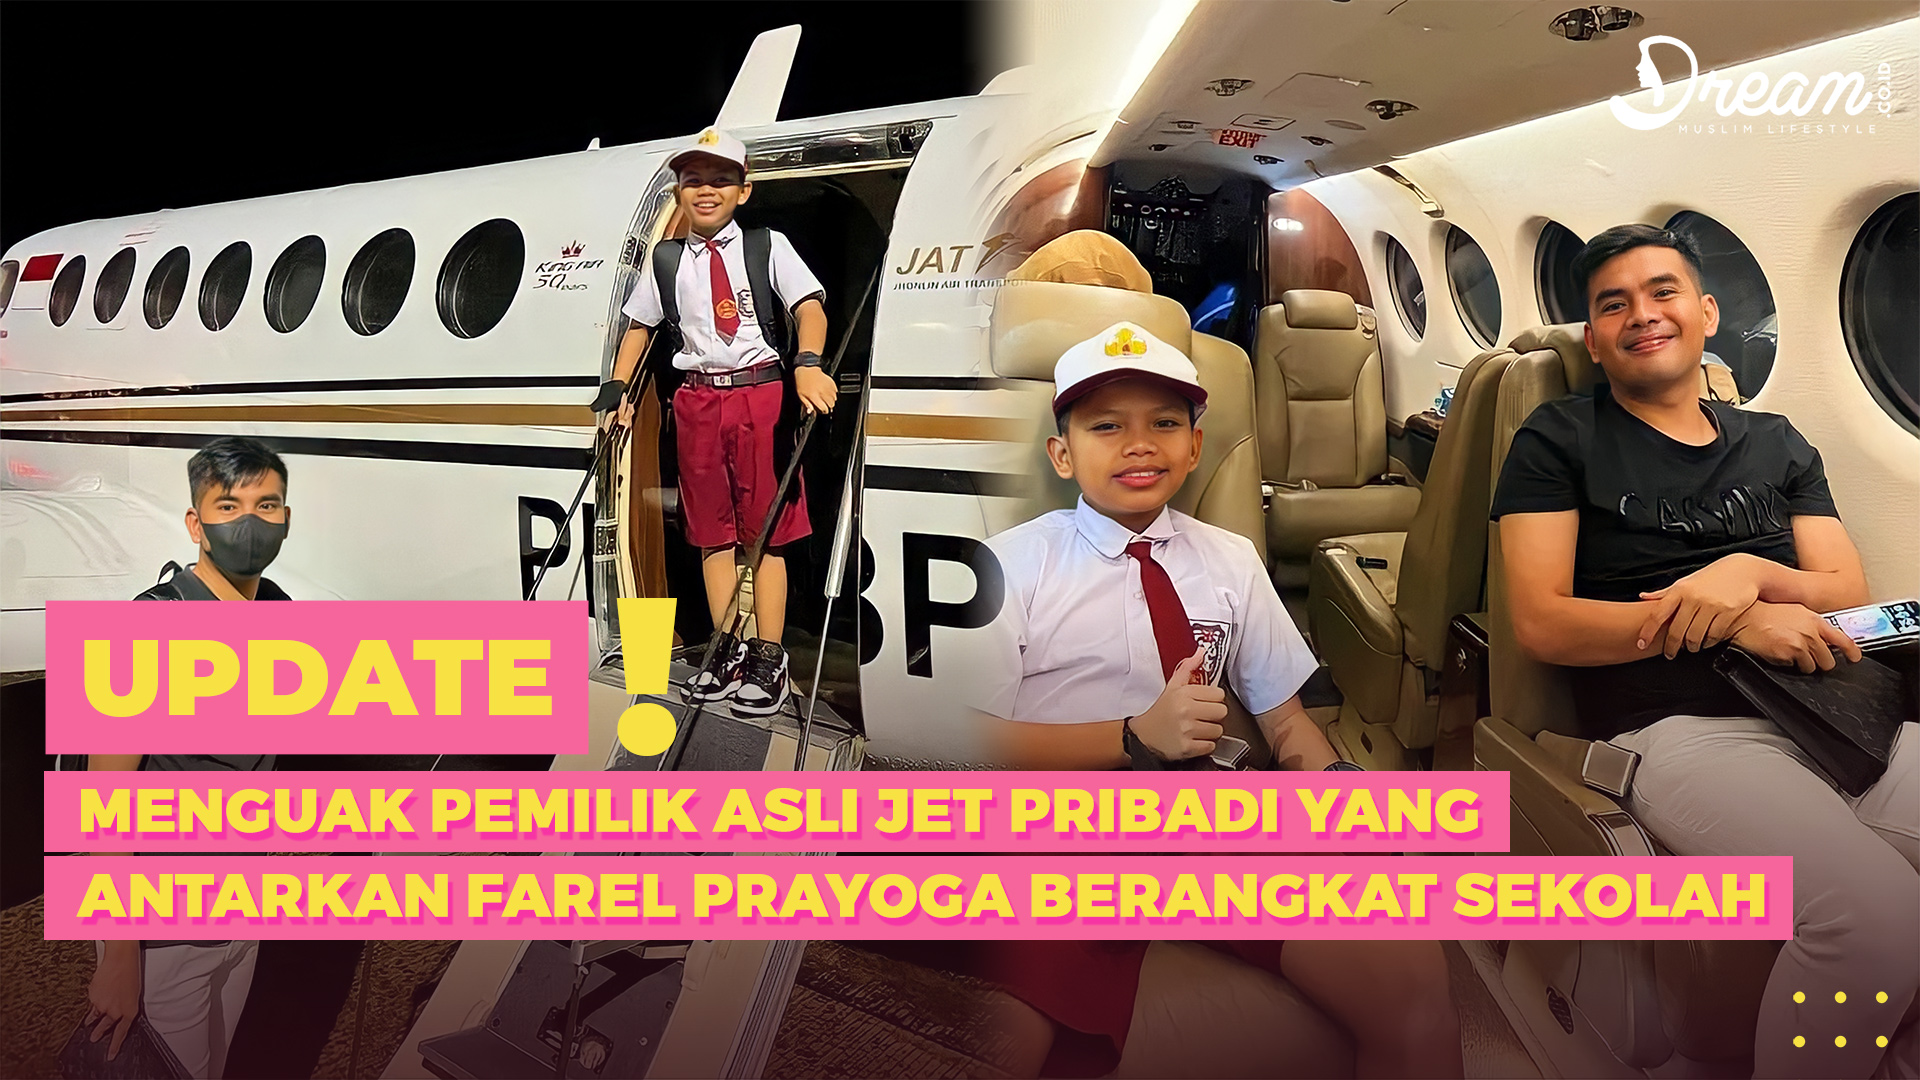 Menguak Pemilik Asli Jet Pribadi yang Antarkan Farel Prayoga Berangkat Sekolah